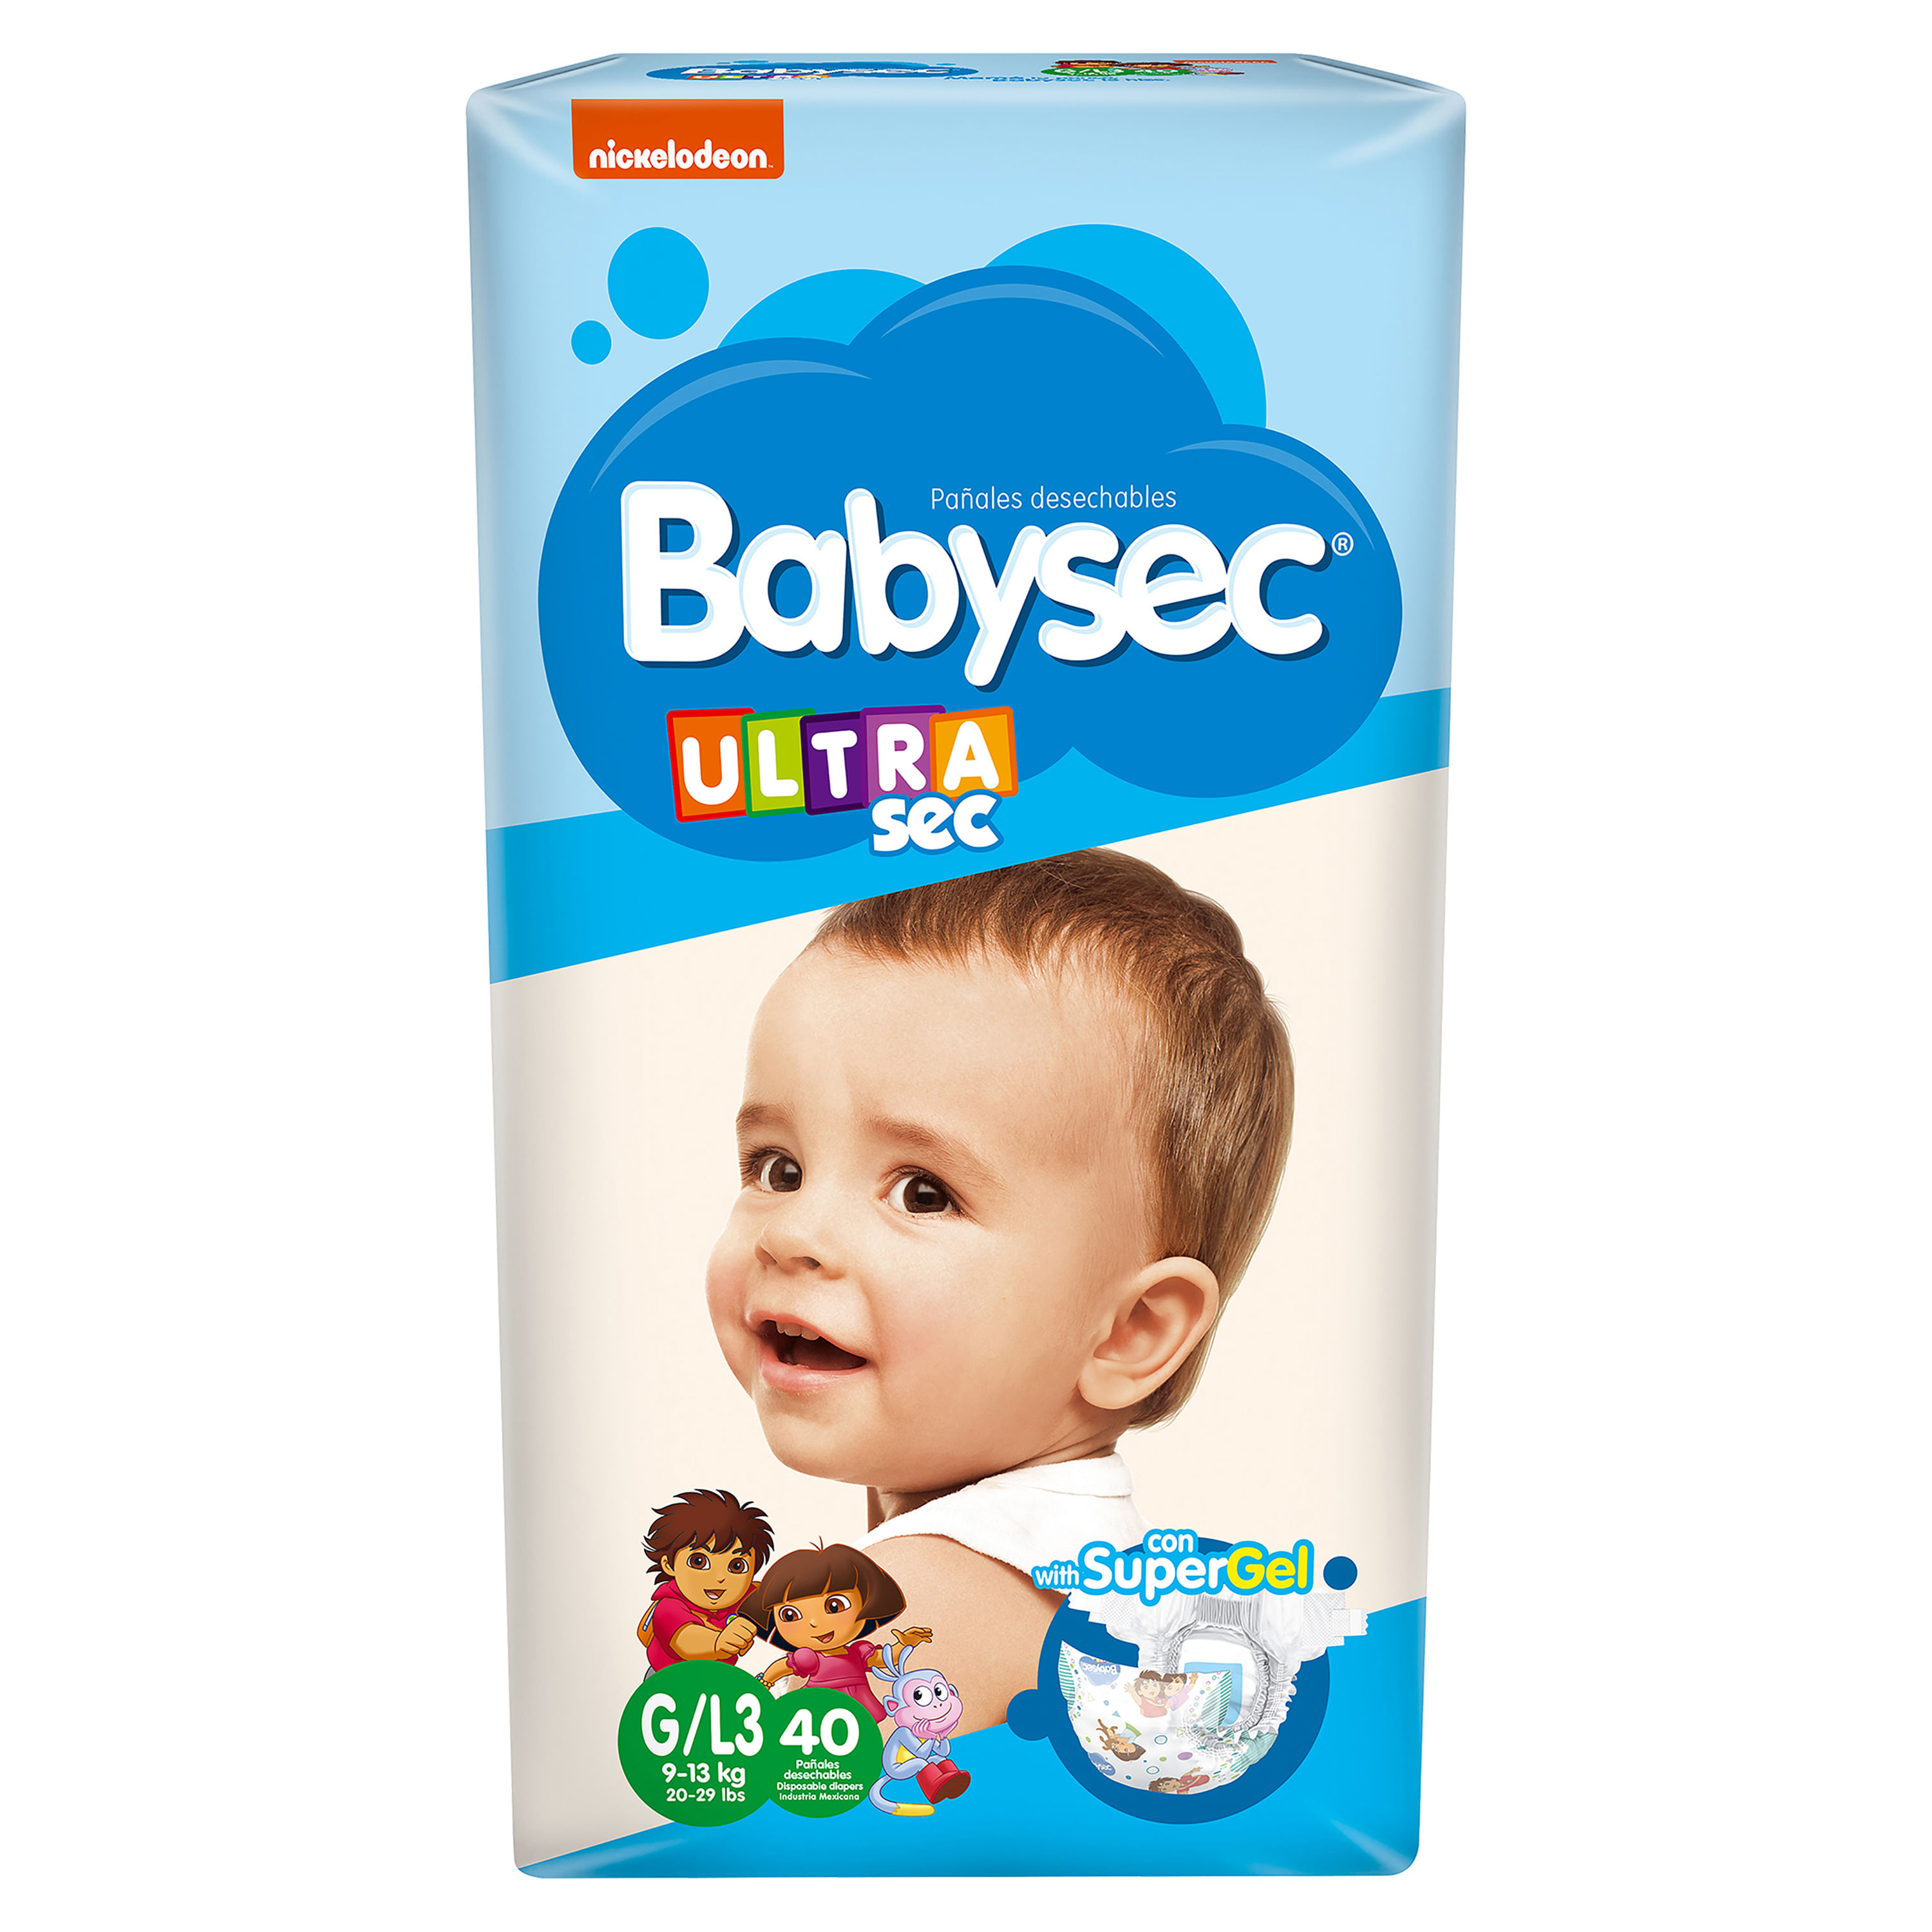 Pañales de Bebé Recién Nacido de Babysec, Productos